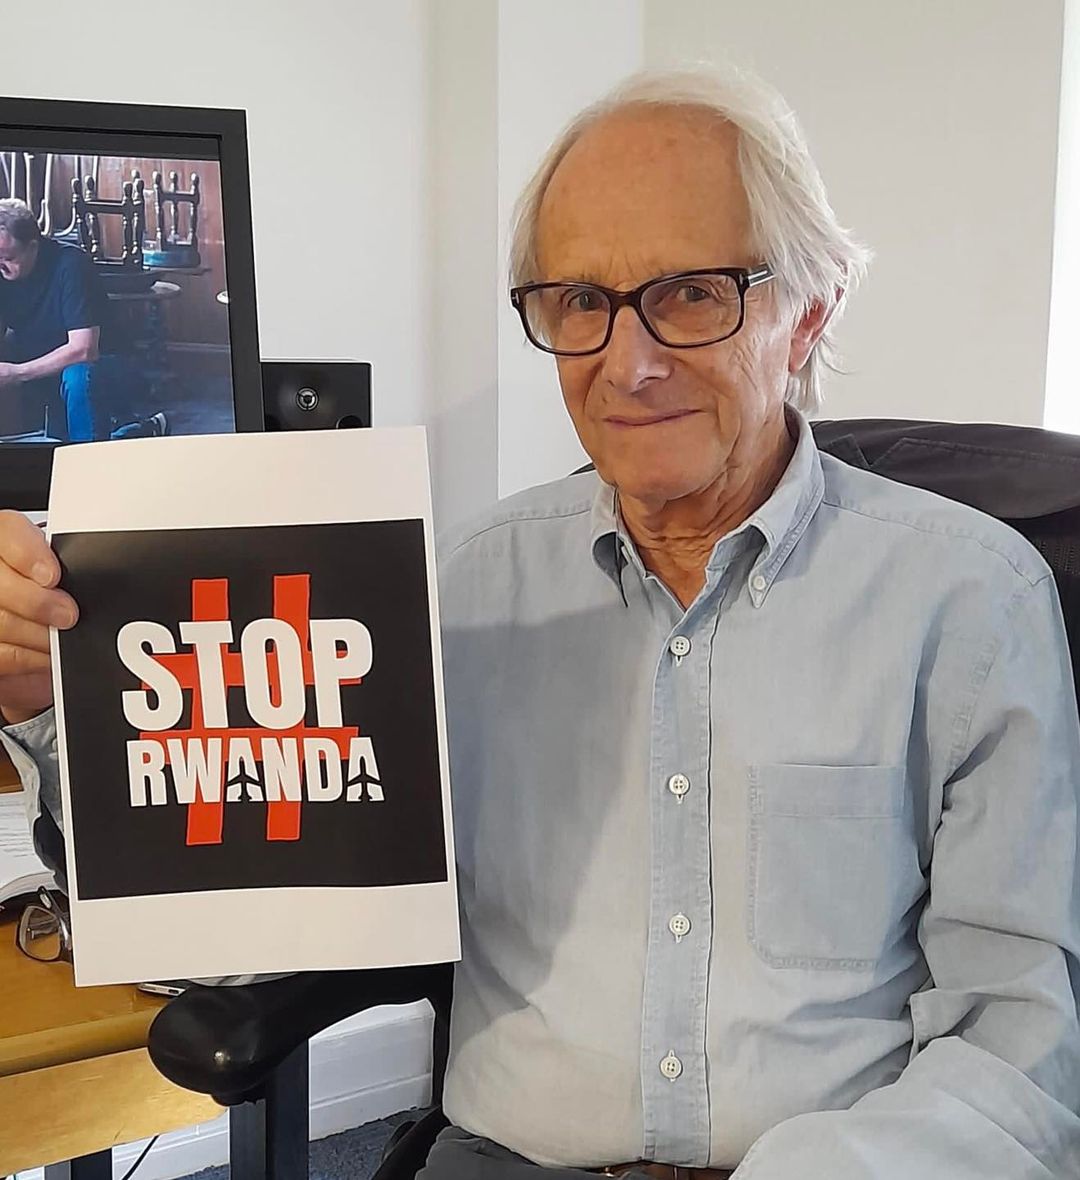 Ken Loach says #StopRwanda